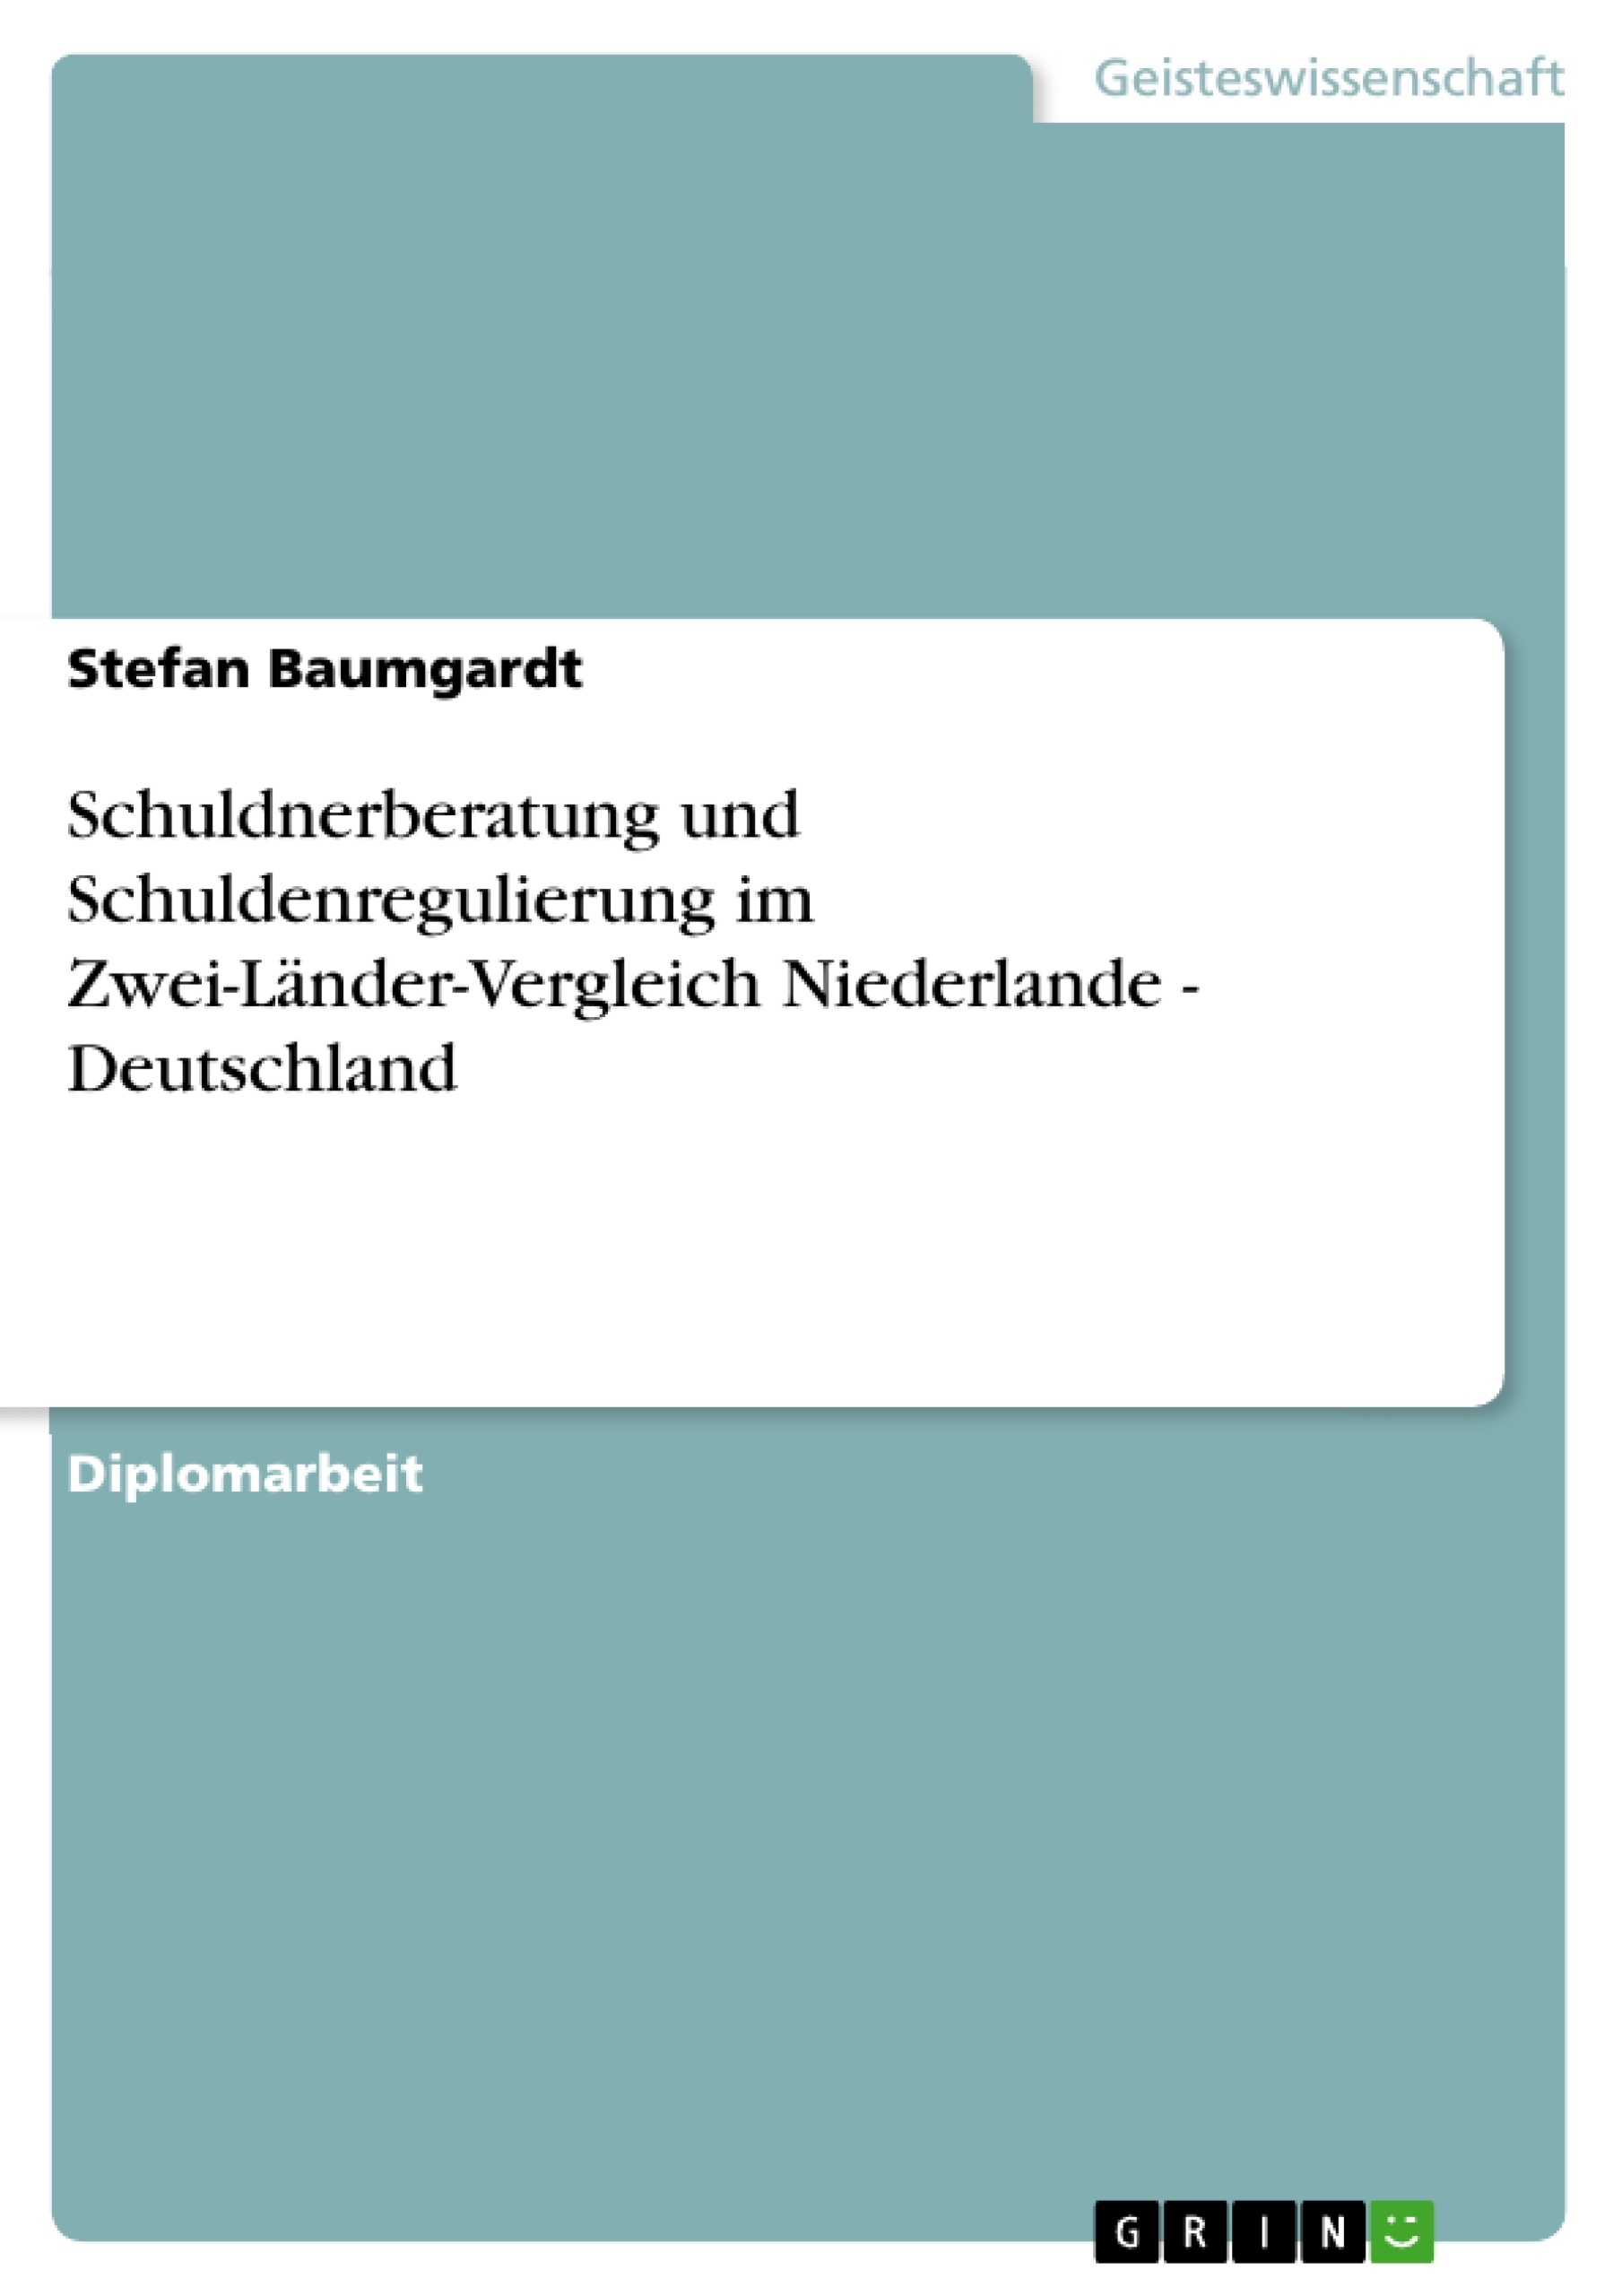 Título: Schuldnerberatung und Schuldenregulierung im Zwei-Länder-Vergleich Niederlande - Deutschland